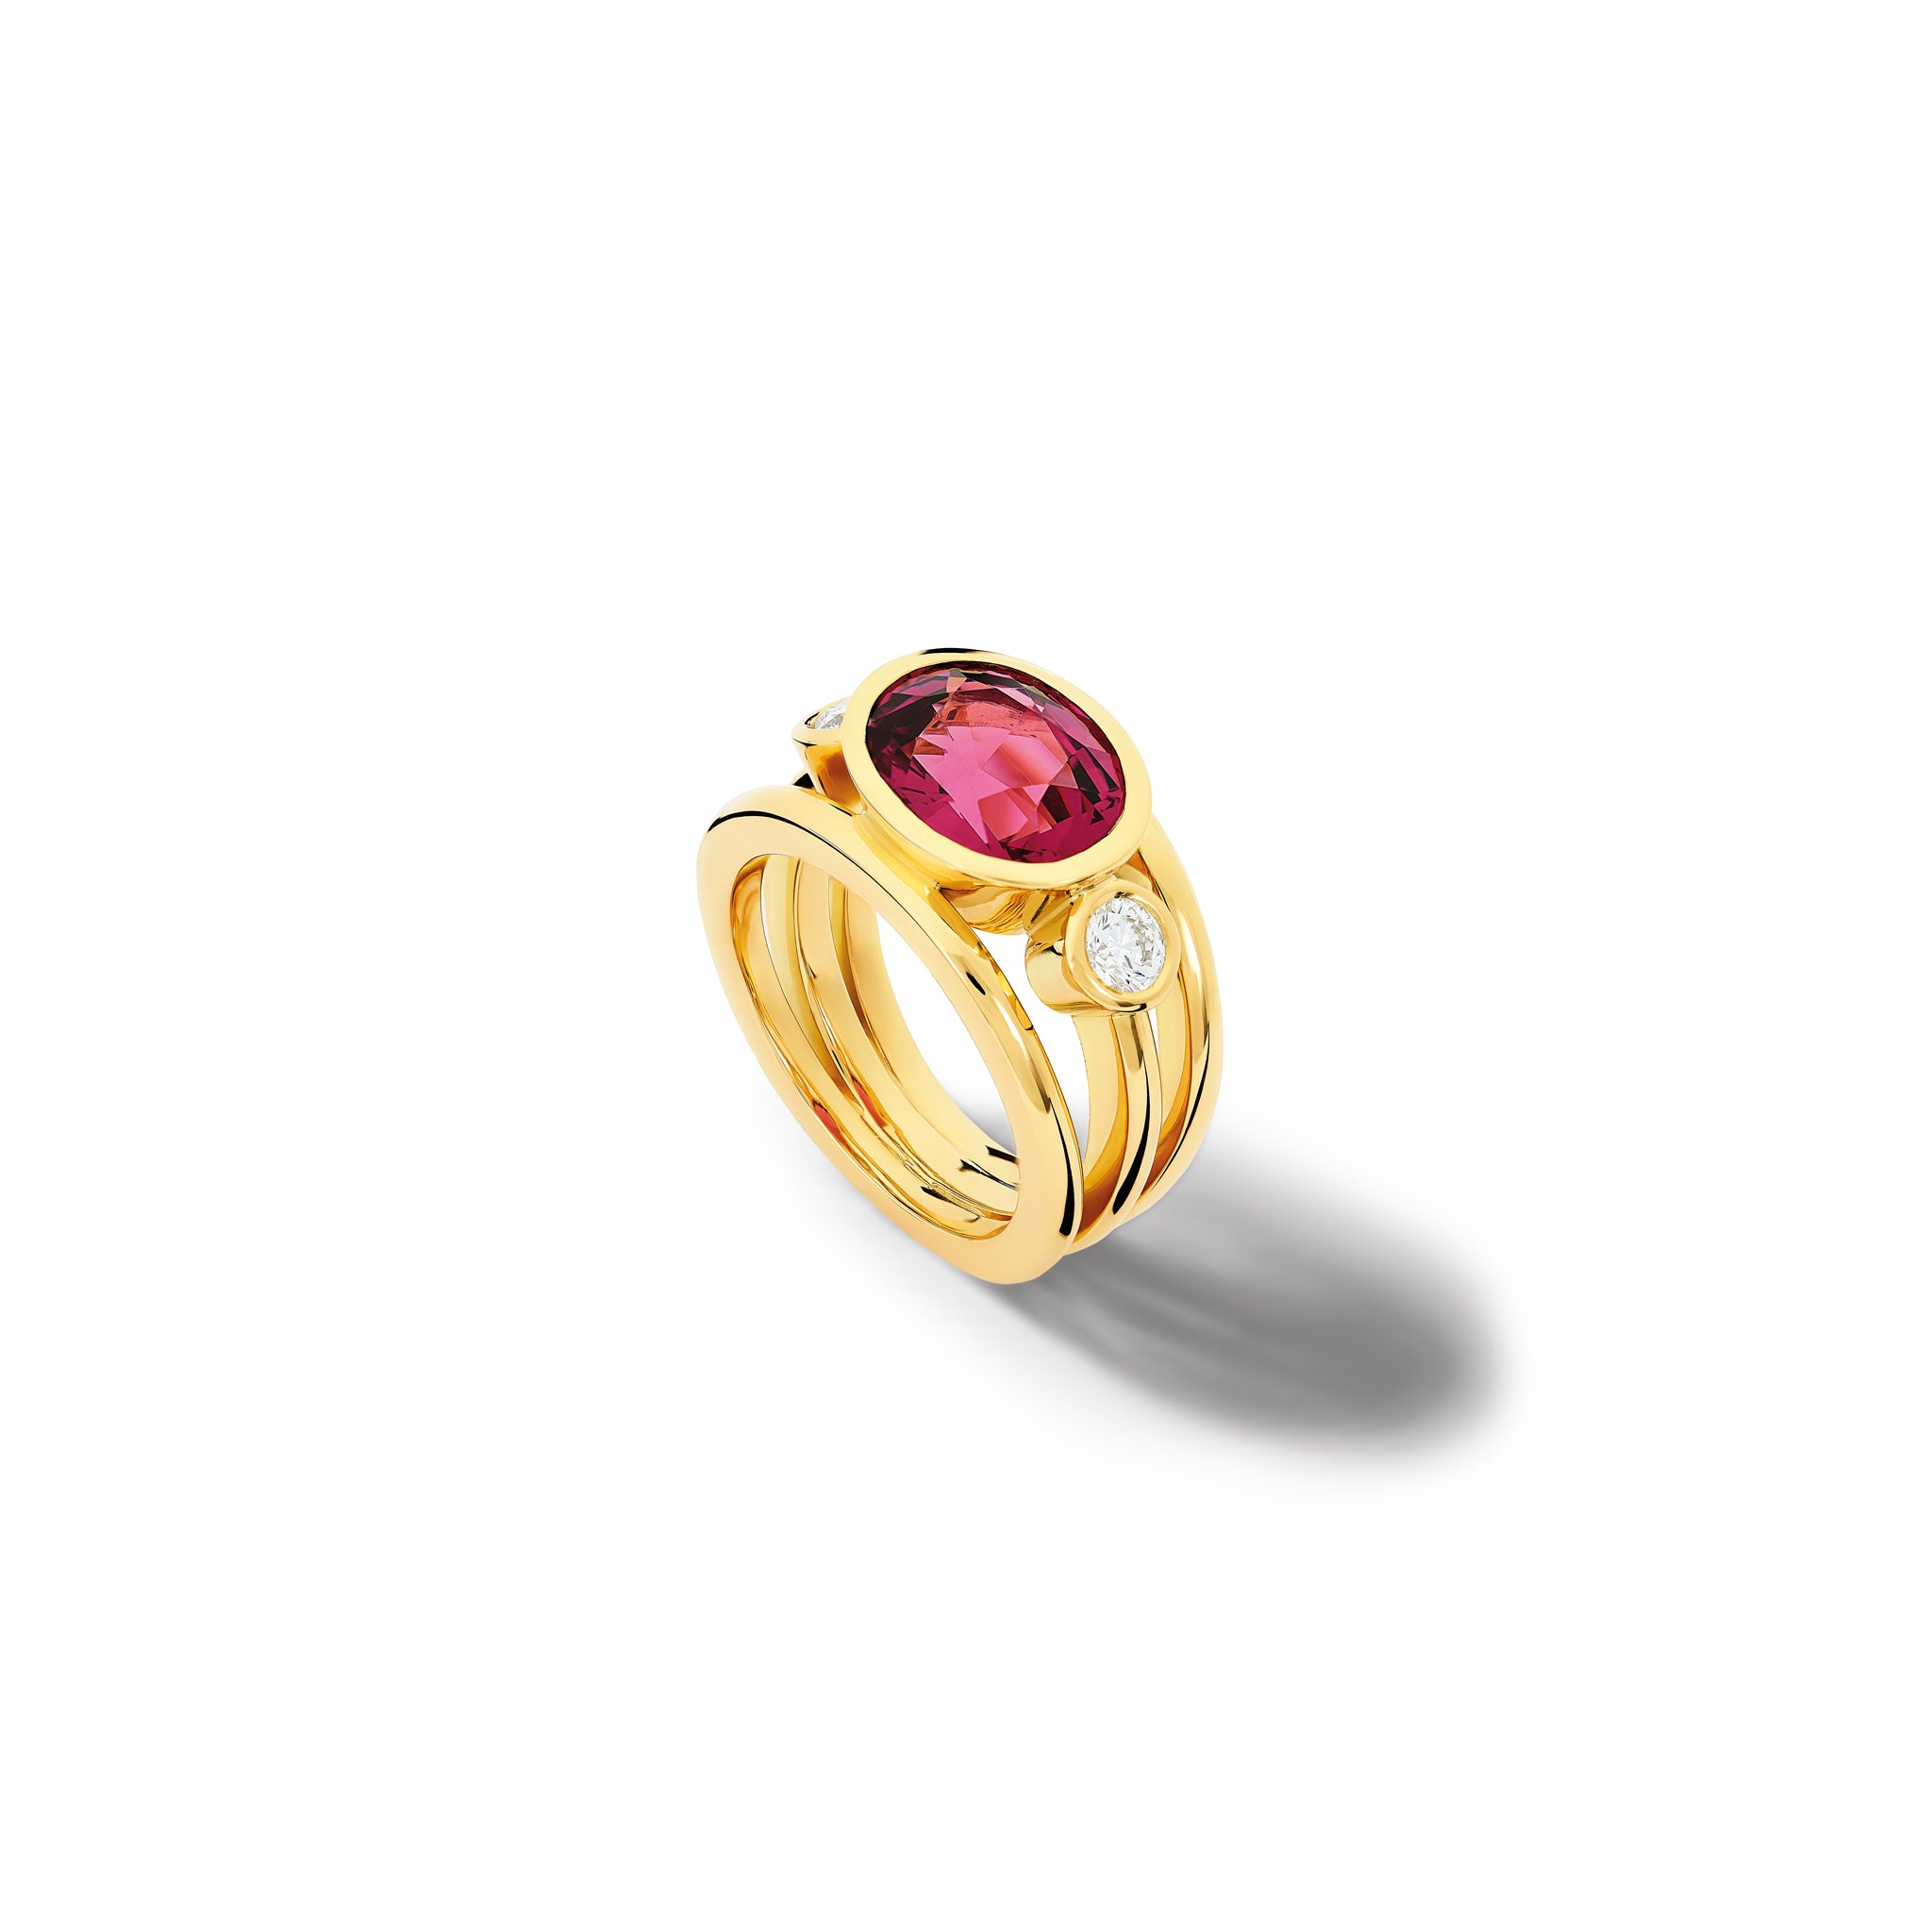 Aeneus Ring 18ct Yellow Gold - Pink Umbalite Garnet & Diamond